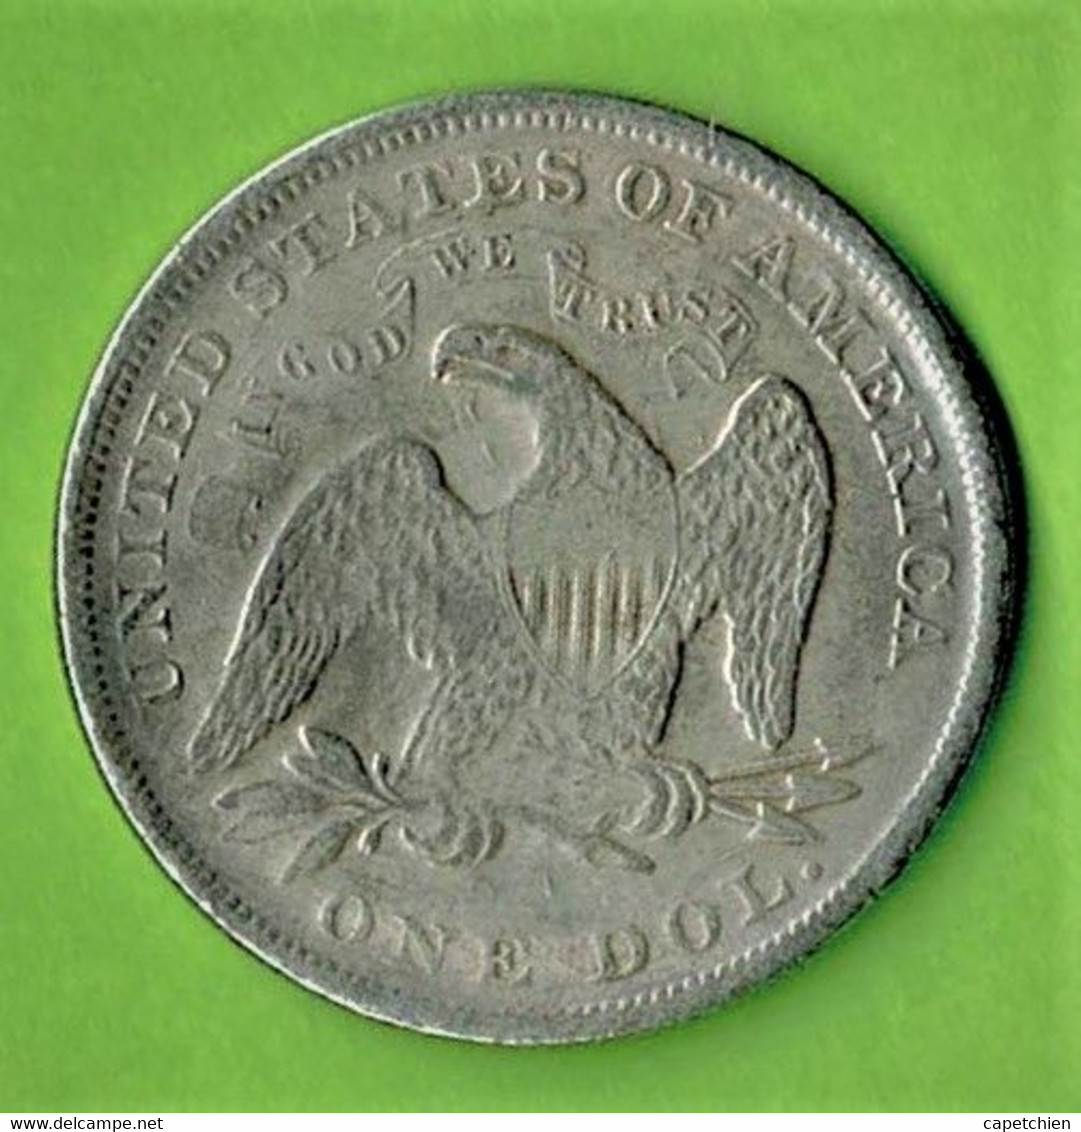 USA / 1 DOLLAR / 1840 / FAUX ( D'origine Asiatique ) ) FALSCHGELD / FAKE COIN - 1840-1873: Seated Liberty (Libertà Seduta)